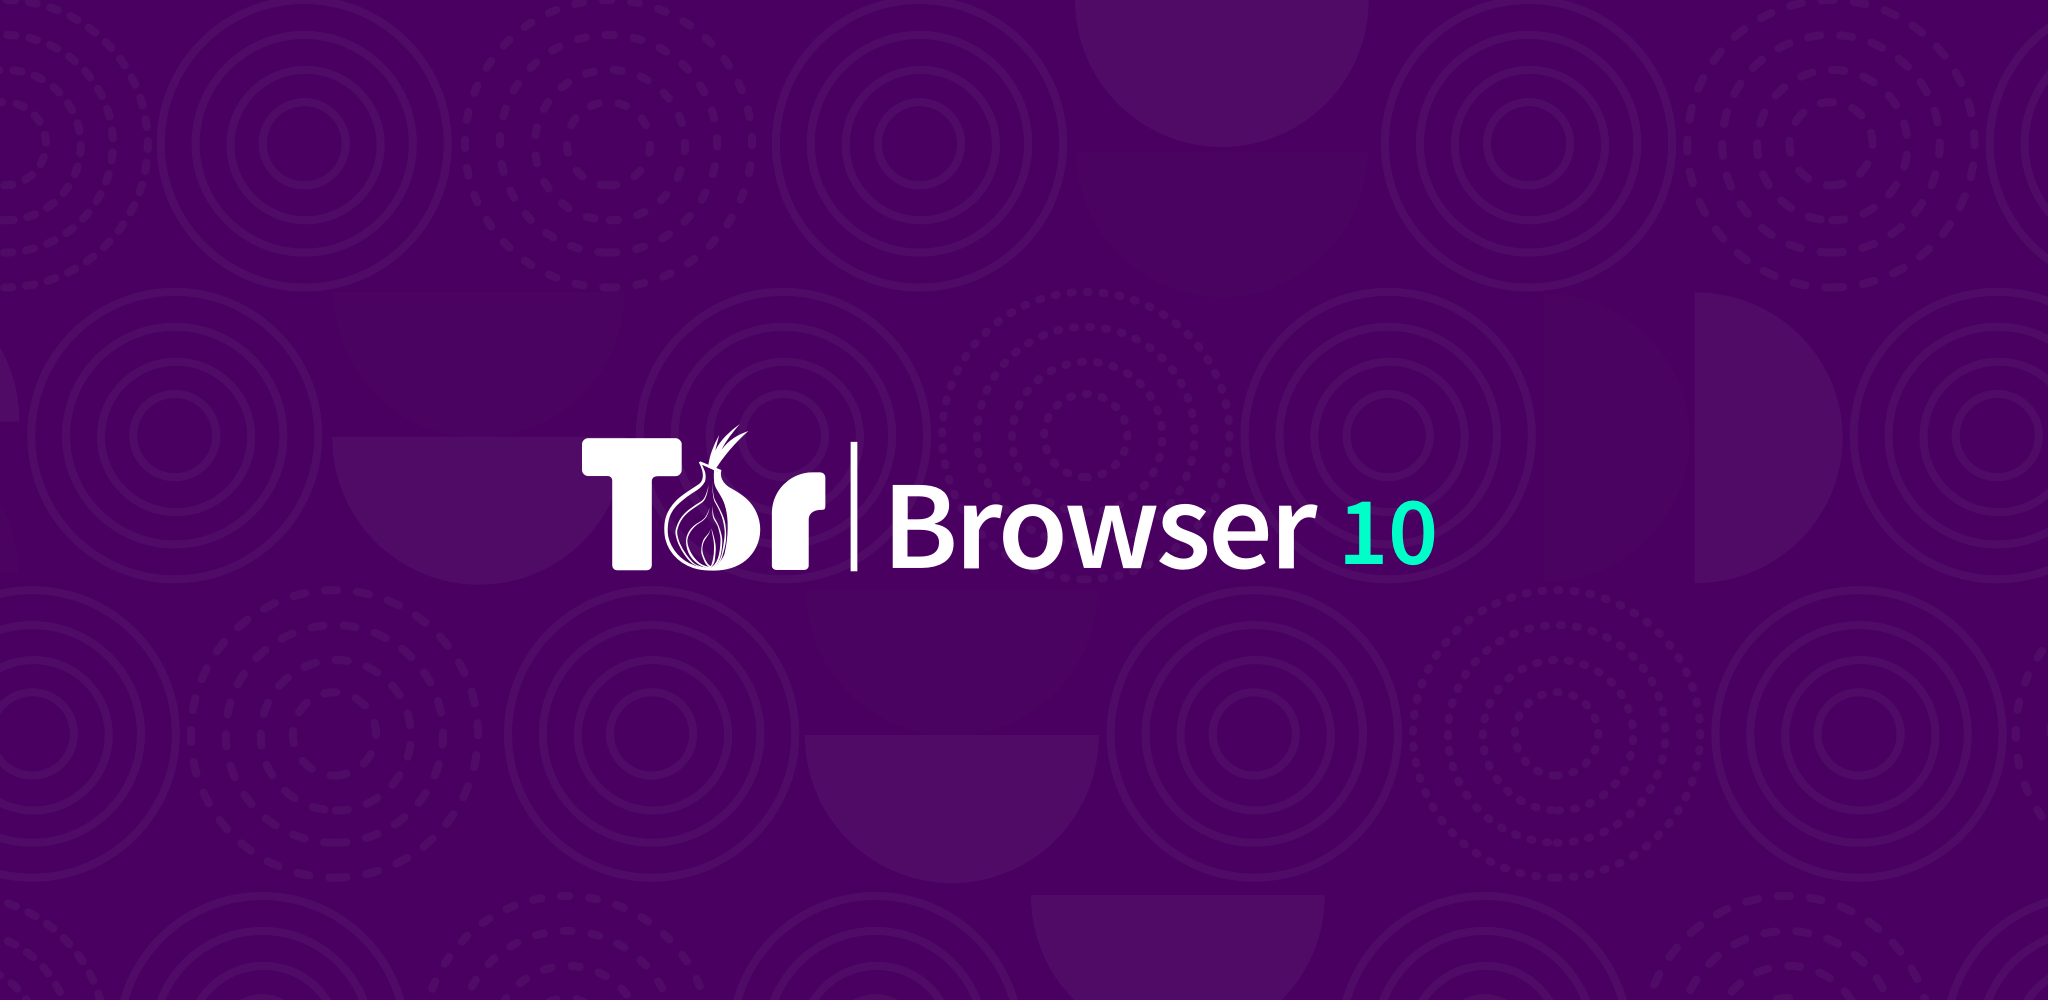 Откуда скачать tor browser gydra тор браузер для убунту скачать бесплатно на русском вход на гидру